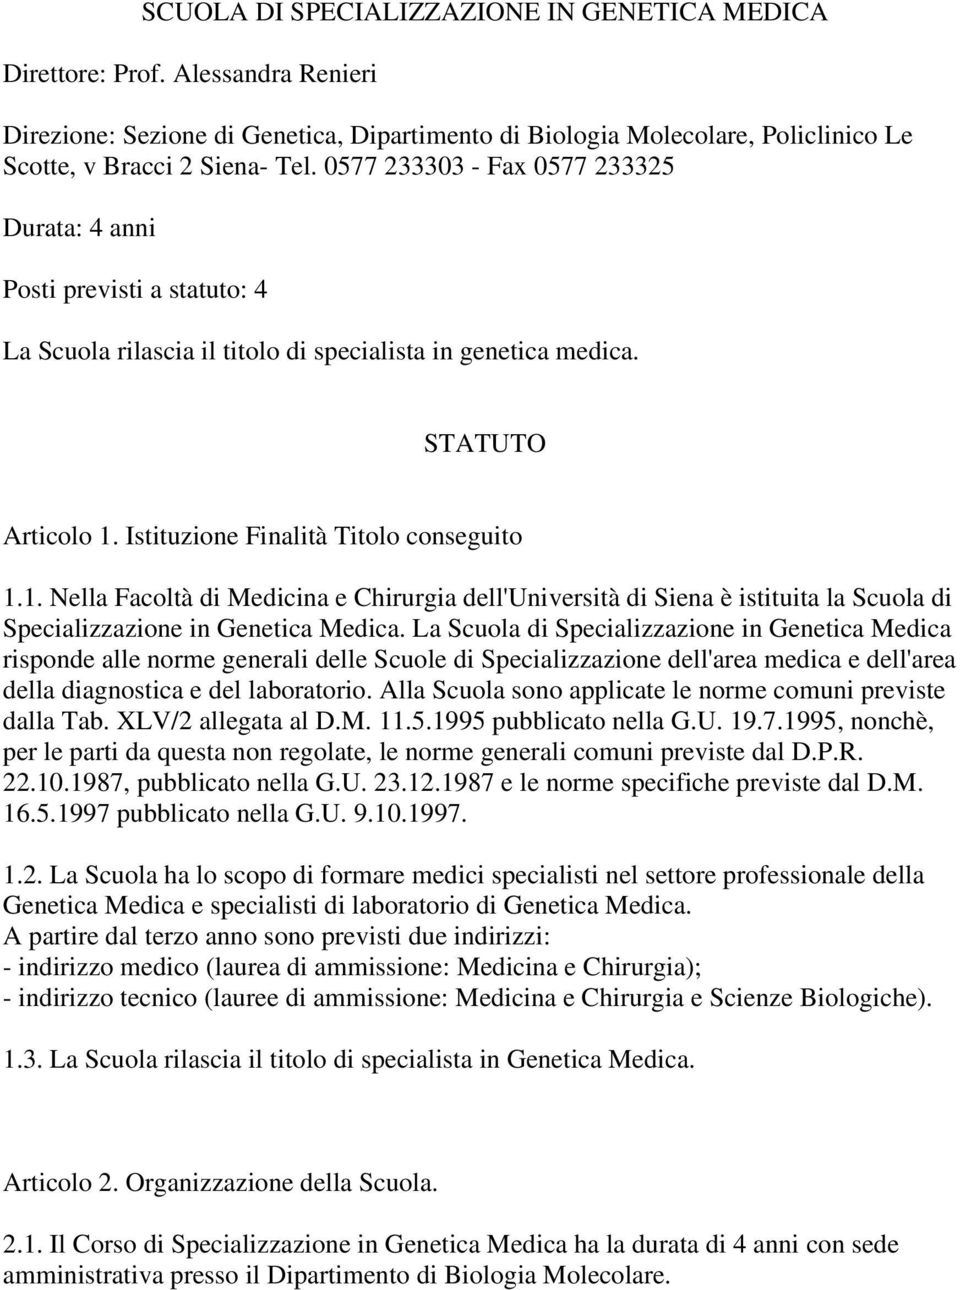 Istituzione Finalità Titolo conseguito 1.1. Nella Facoltà di Medicina e Chirurgia dell'università di Siena è istituita la Scuola di Specializzazione in Genetica Medica.